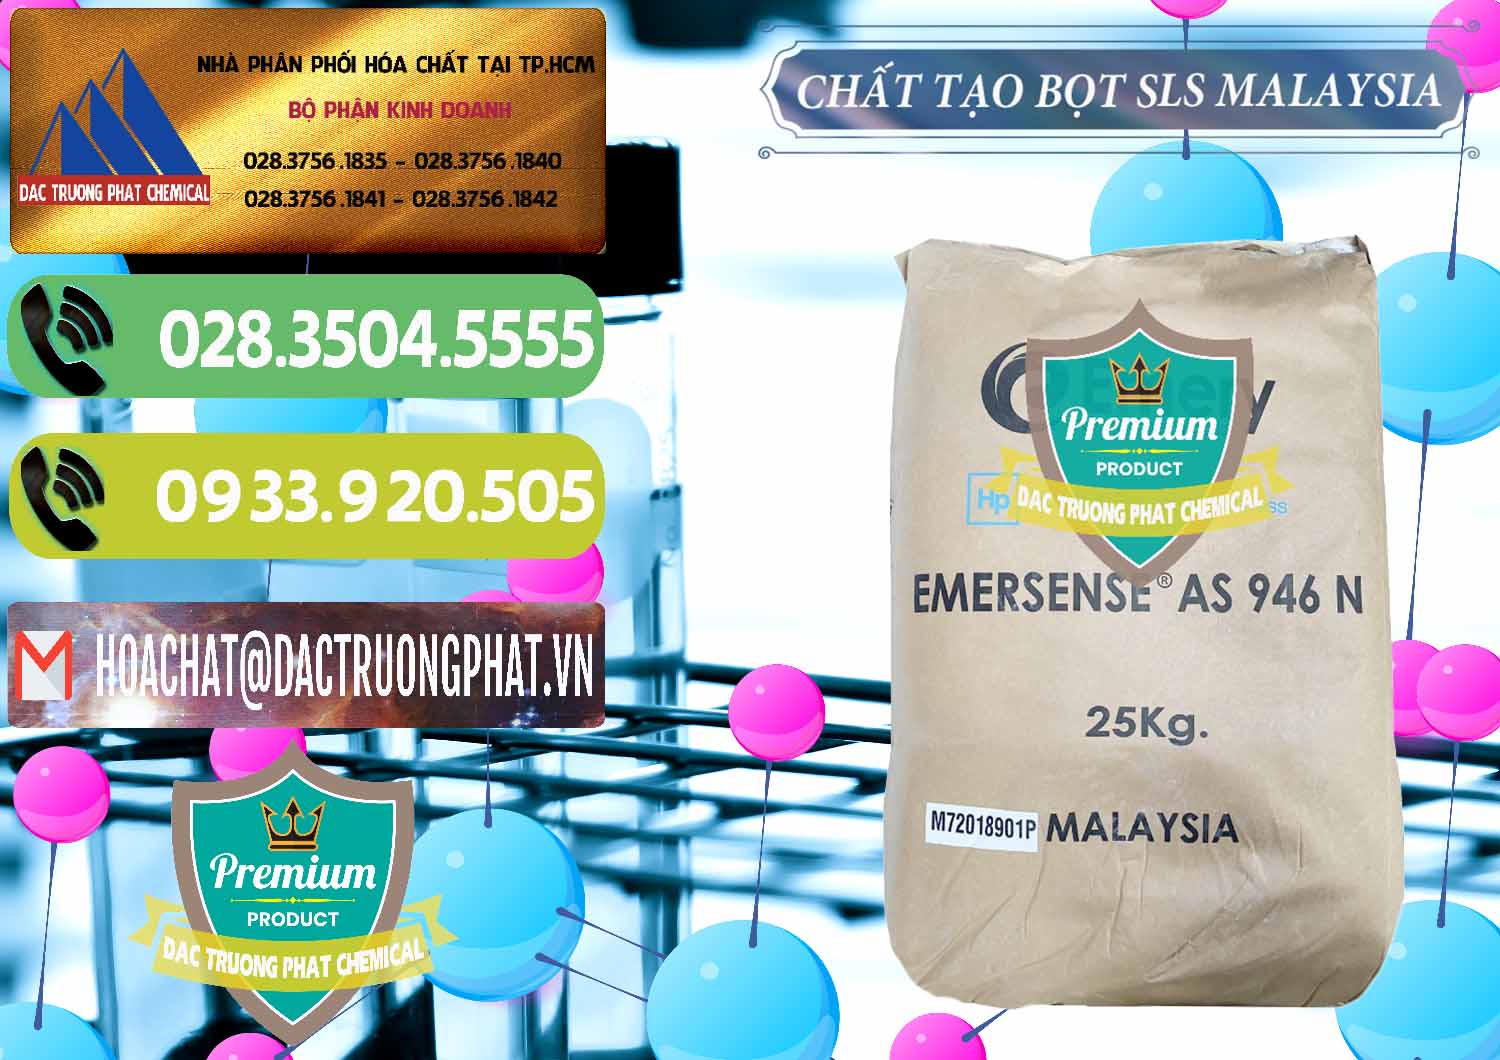 Nơi bán và cung cấp Chất Tạo Bọt SLS Emery - Emersense AS 946N Mã Lai Malaysia - 0423 - Chuyên phân phối và cung cấp hóa chất tại TP.HCM - hoachatmientay.vn